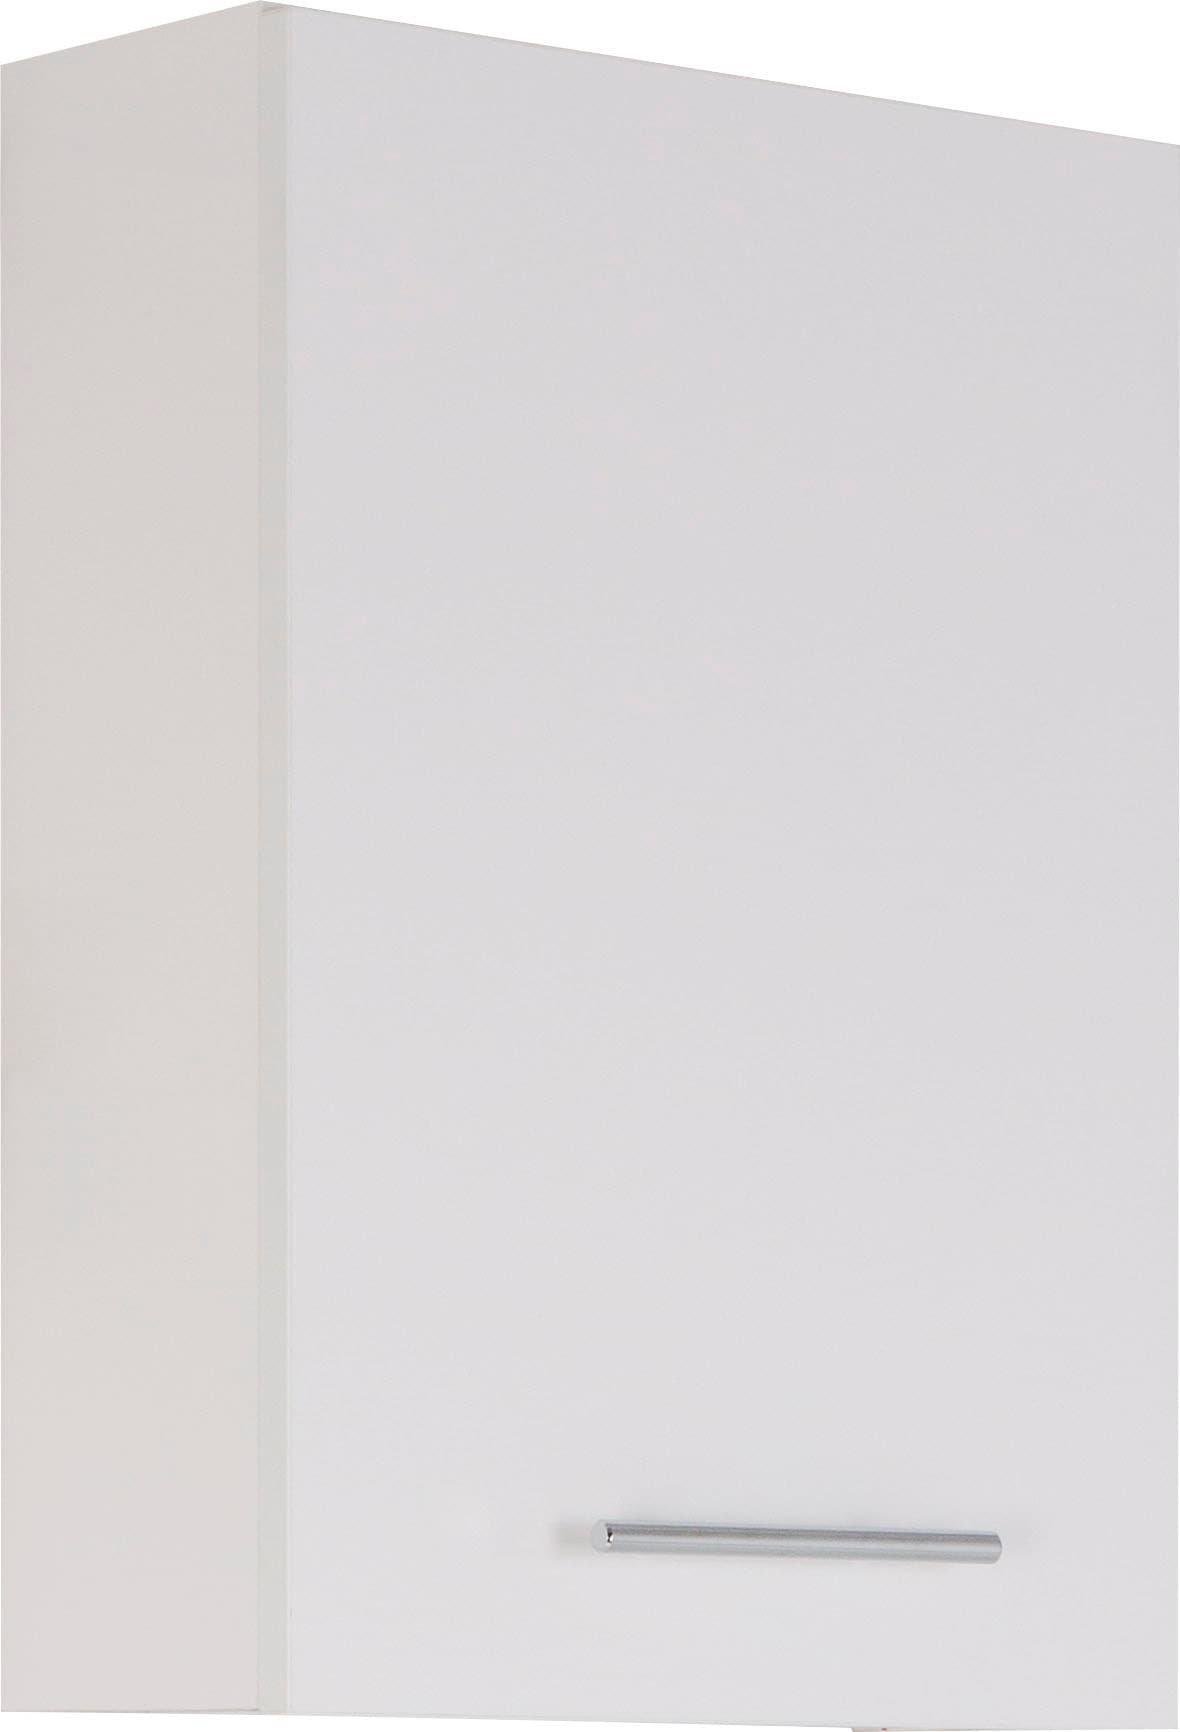 MARLIN Hängeschrank »3040«, Breite 40 cm